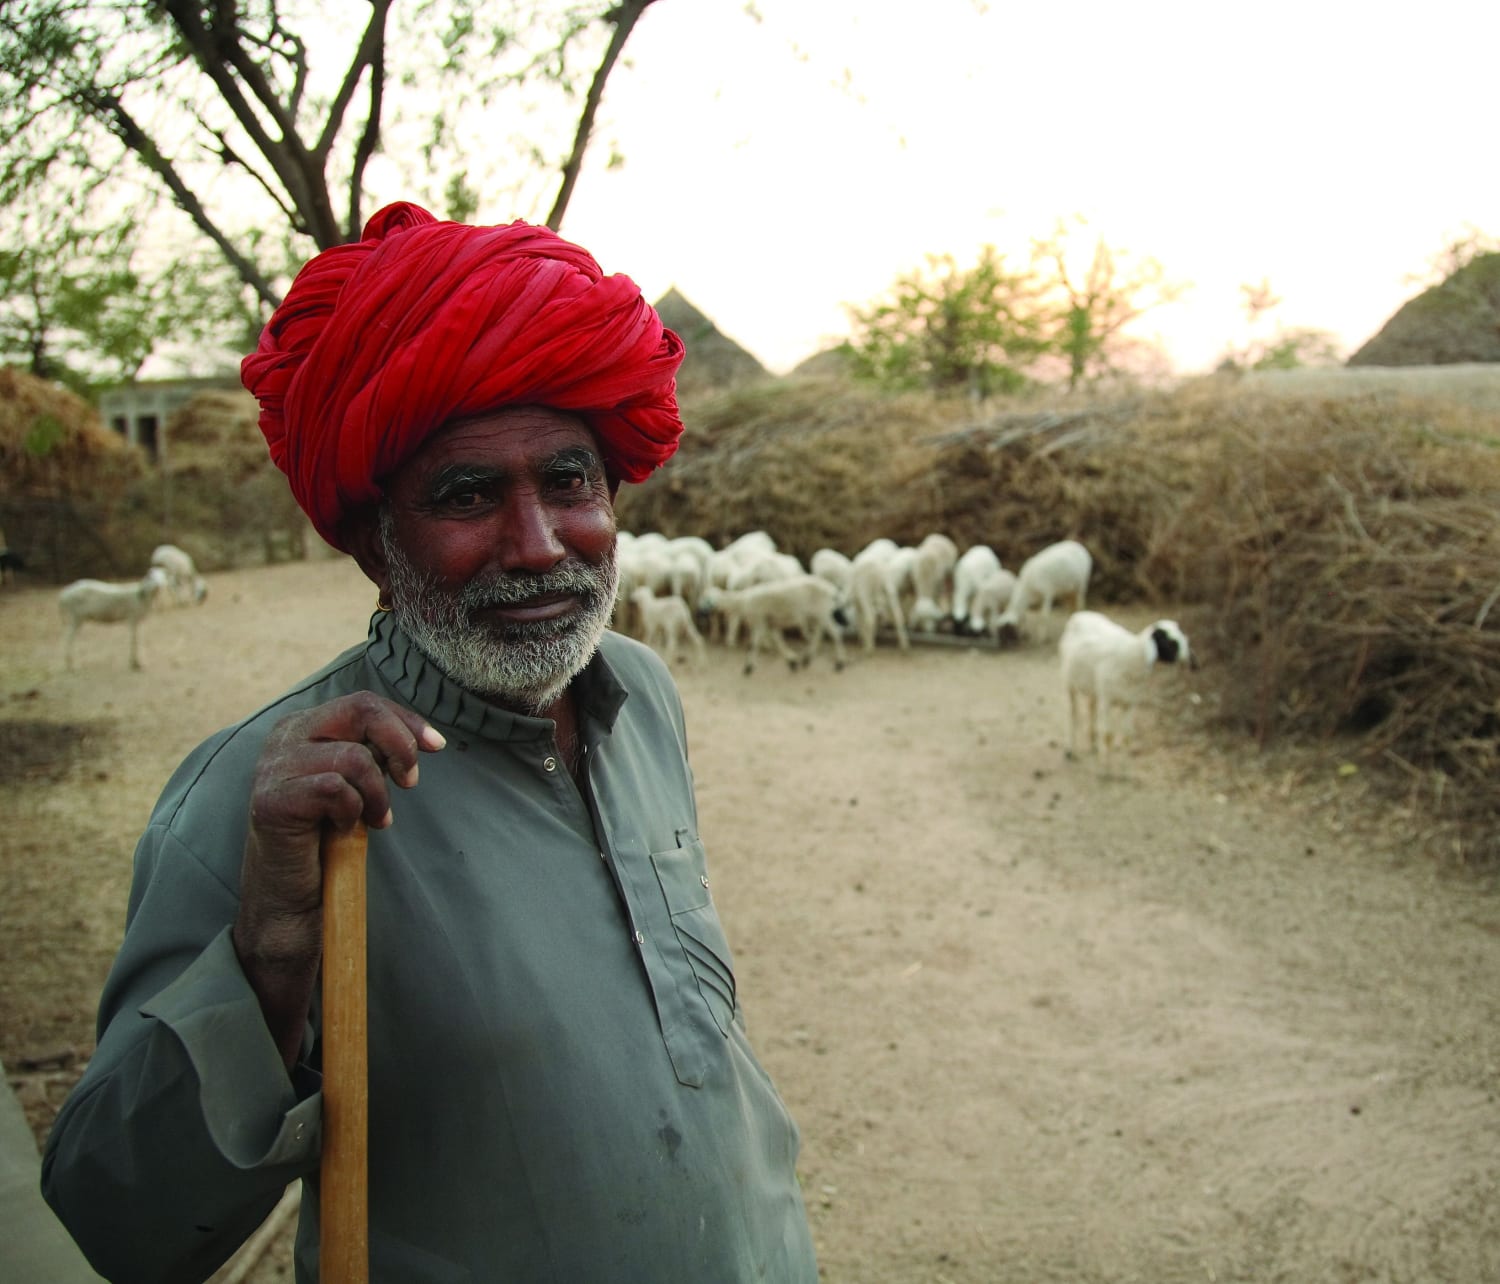 Shepherd in Rajasthan, India